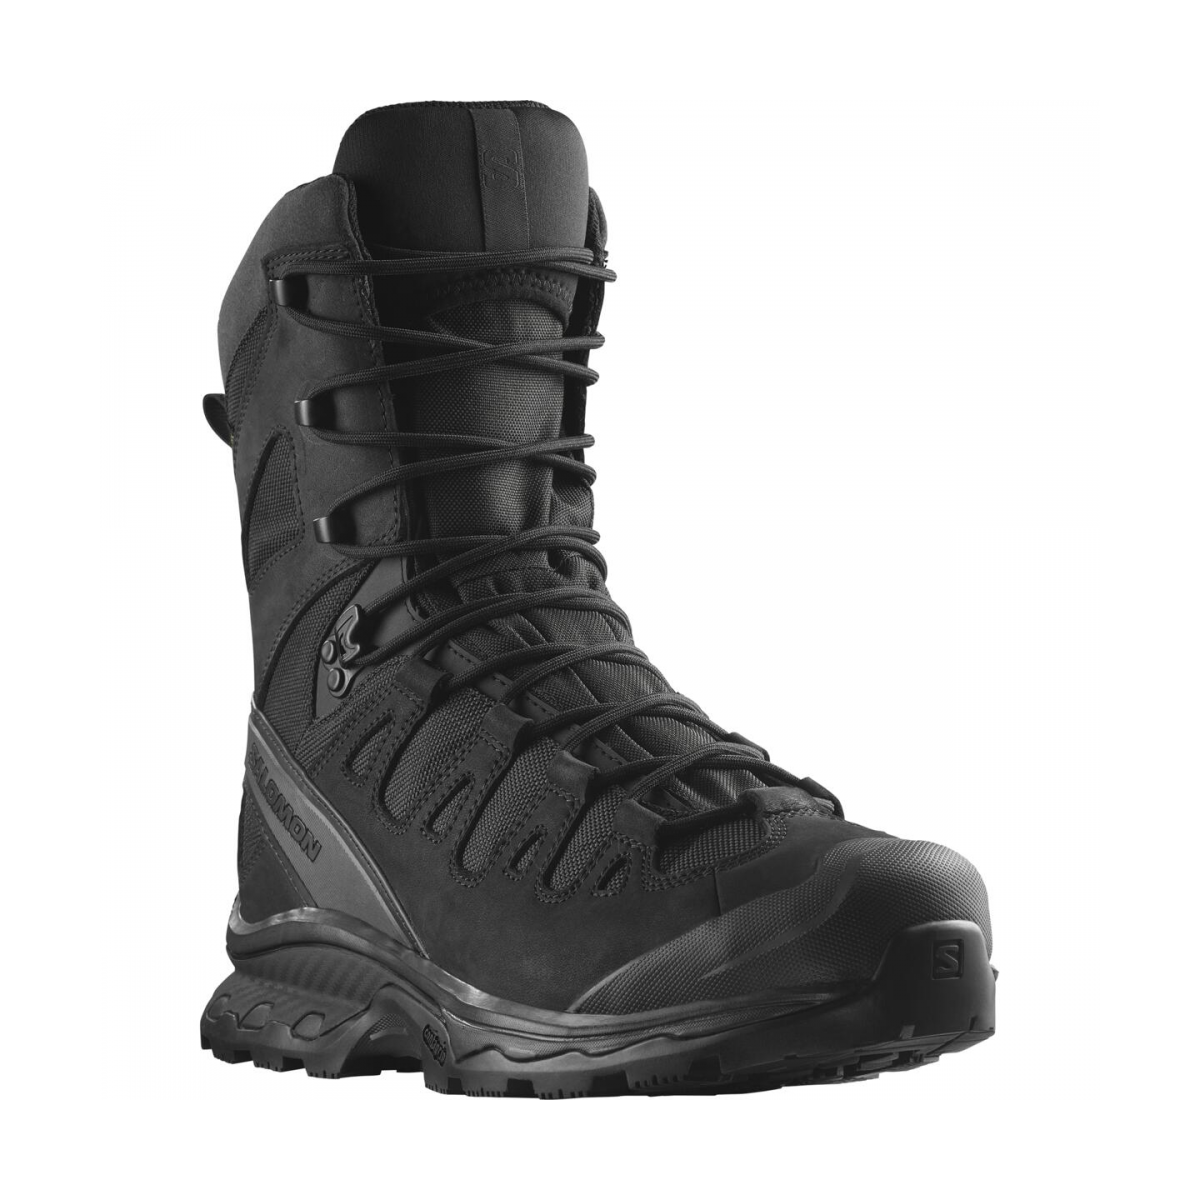 SALOMON QUEST 4D FORCES 2 HIGH GTX EN tactical footwear - black